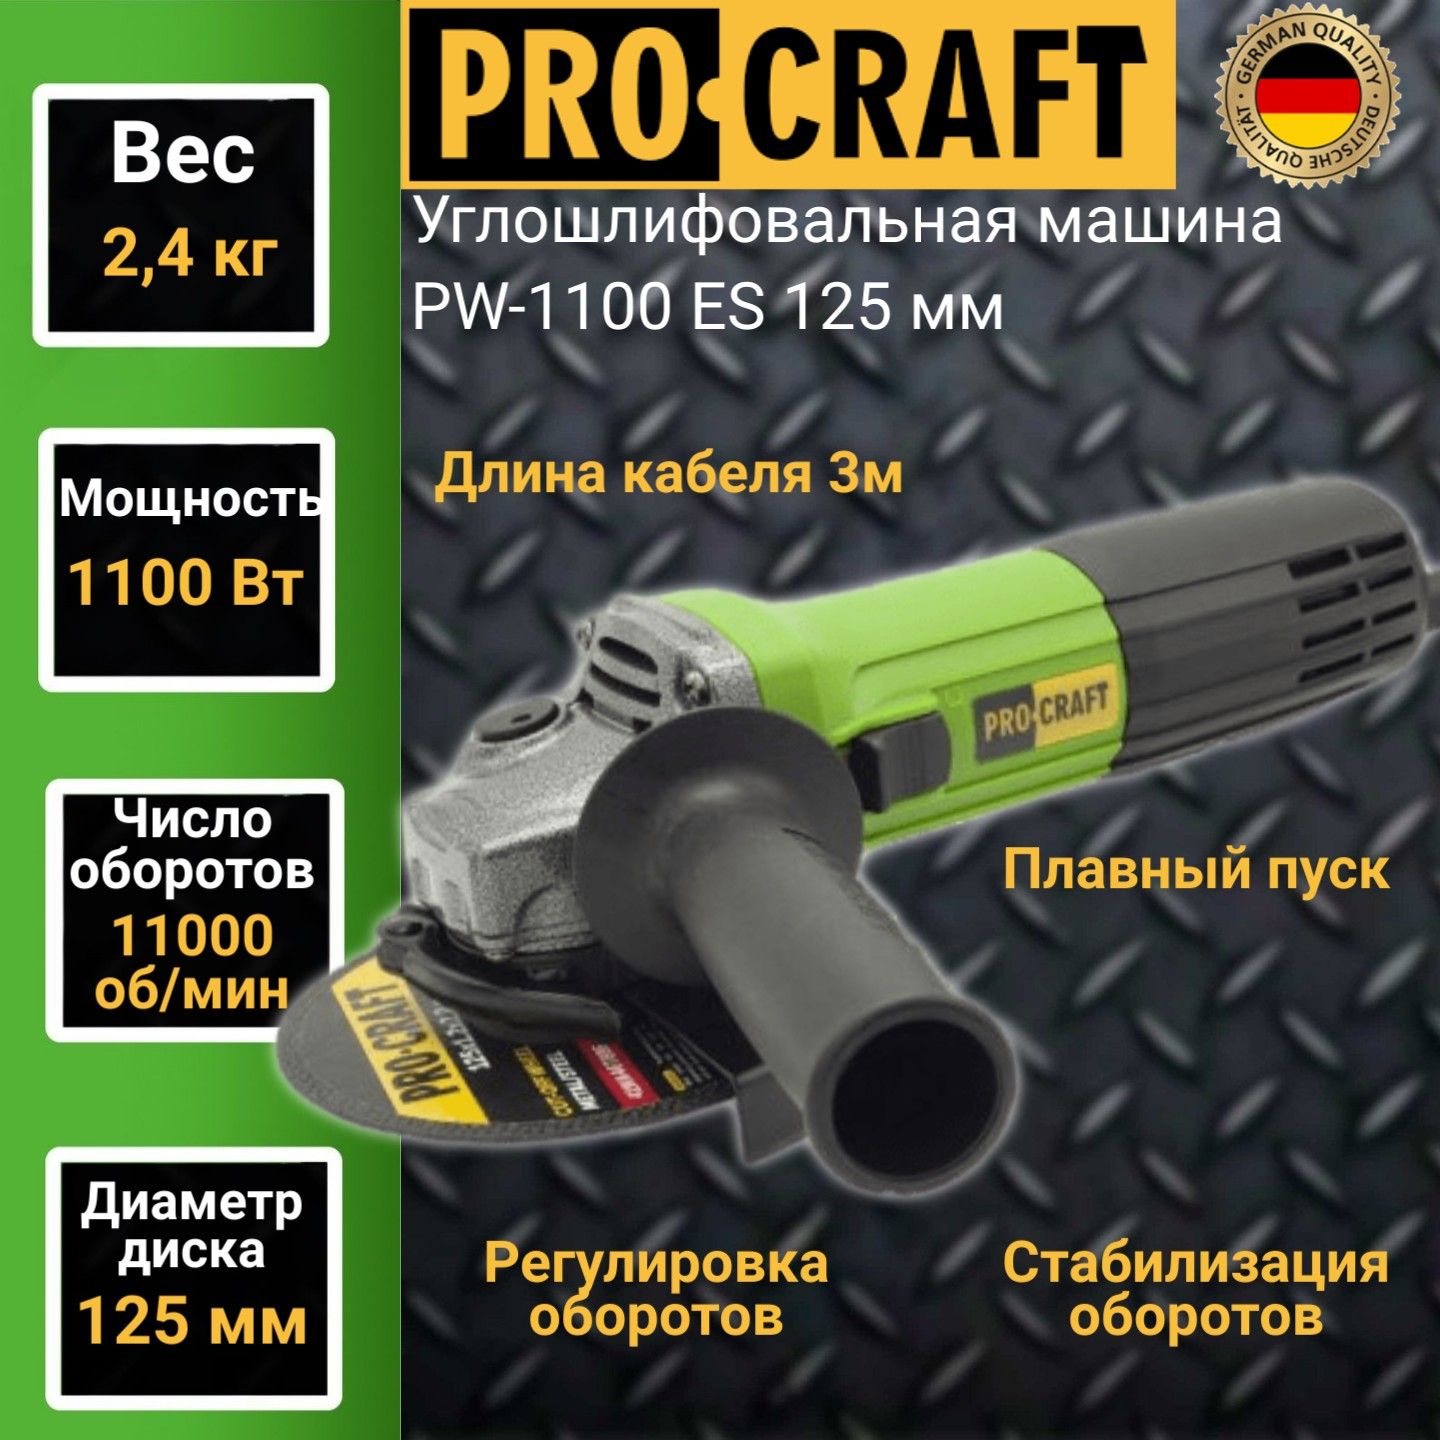 Углошлифовальная машина болгарка Procraft PW-1100ES, 125мм круг, 1100Вт, 11000об/мин